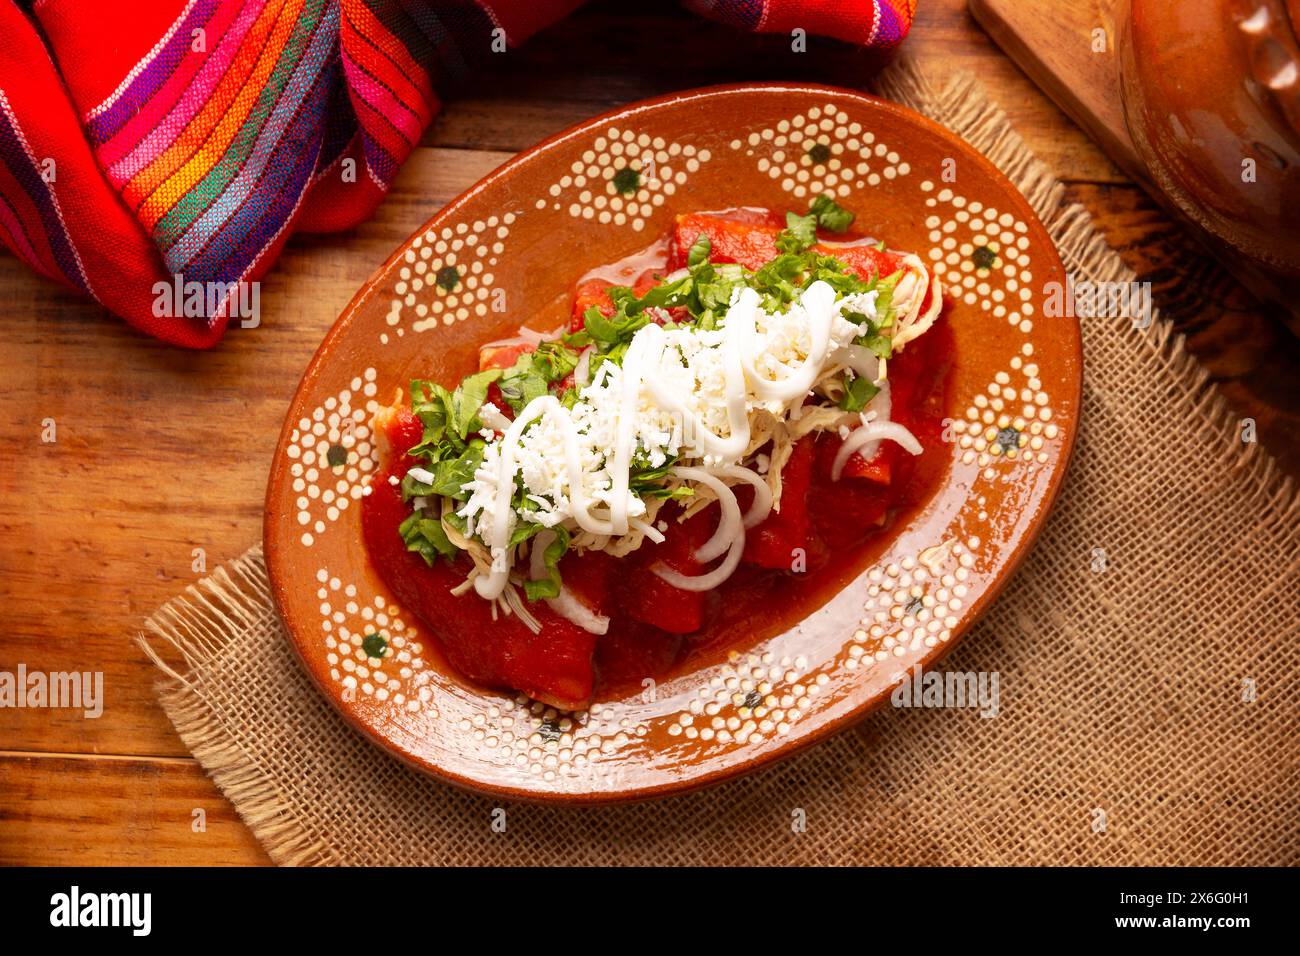 Entomatadas. Aussi connu sous le nom Enjitomatadas, un plat typique de la cuisine mexicaine préparé avec tortilla de maïs, sauce tomate et farci avec chicke râpé Banque D'Images